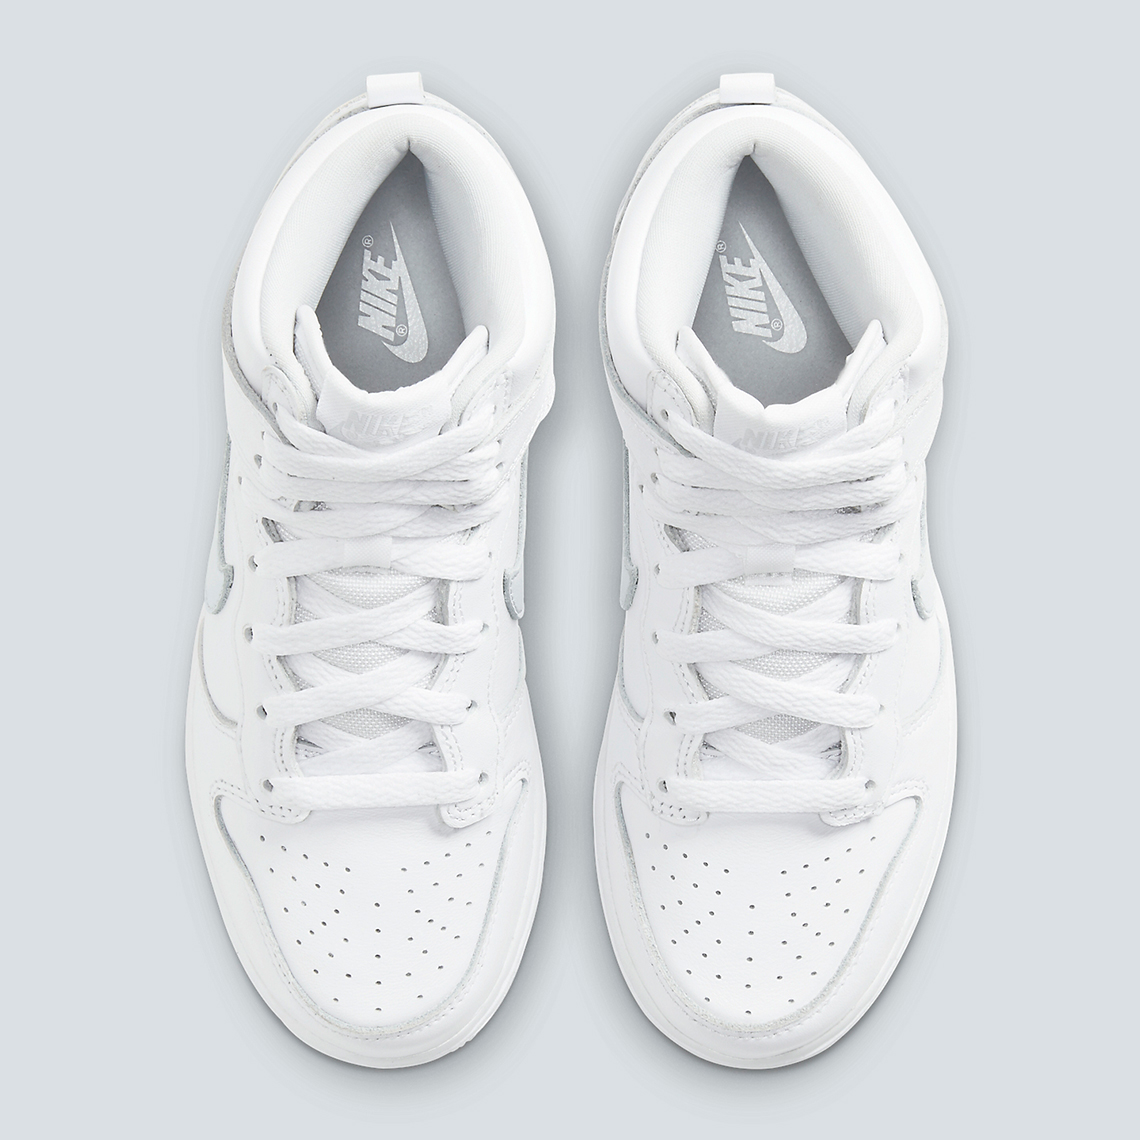 Nike Dunk Hi Sp White Grey Dc9053 101 4